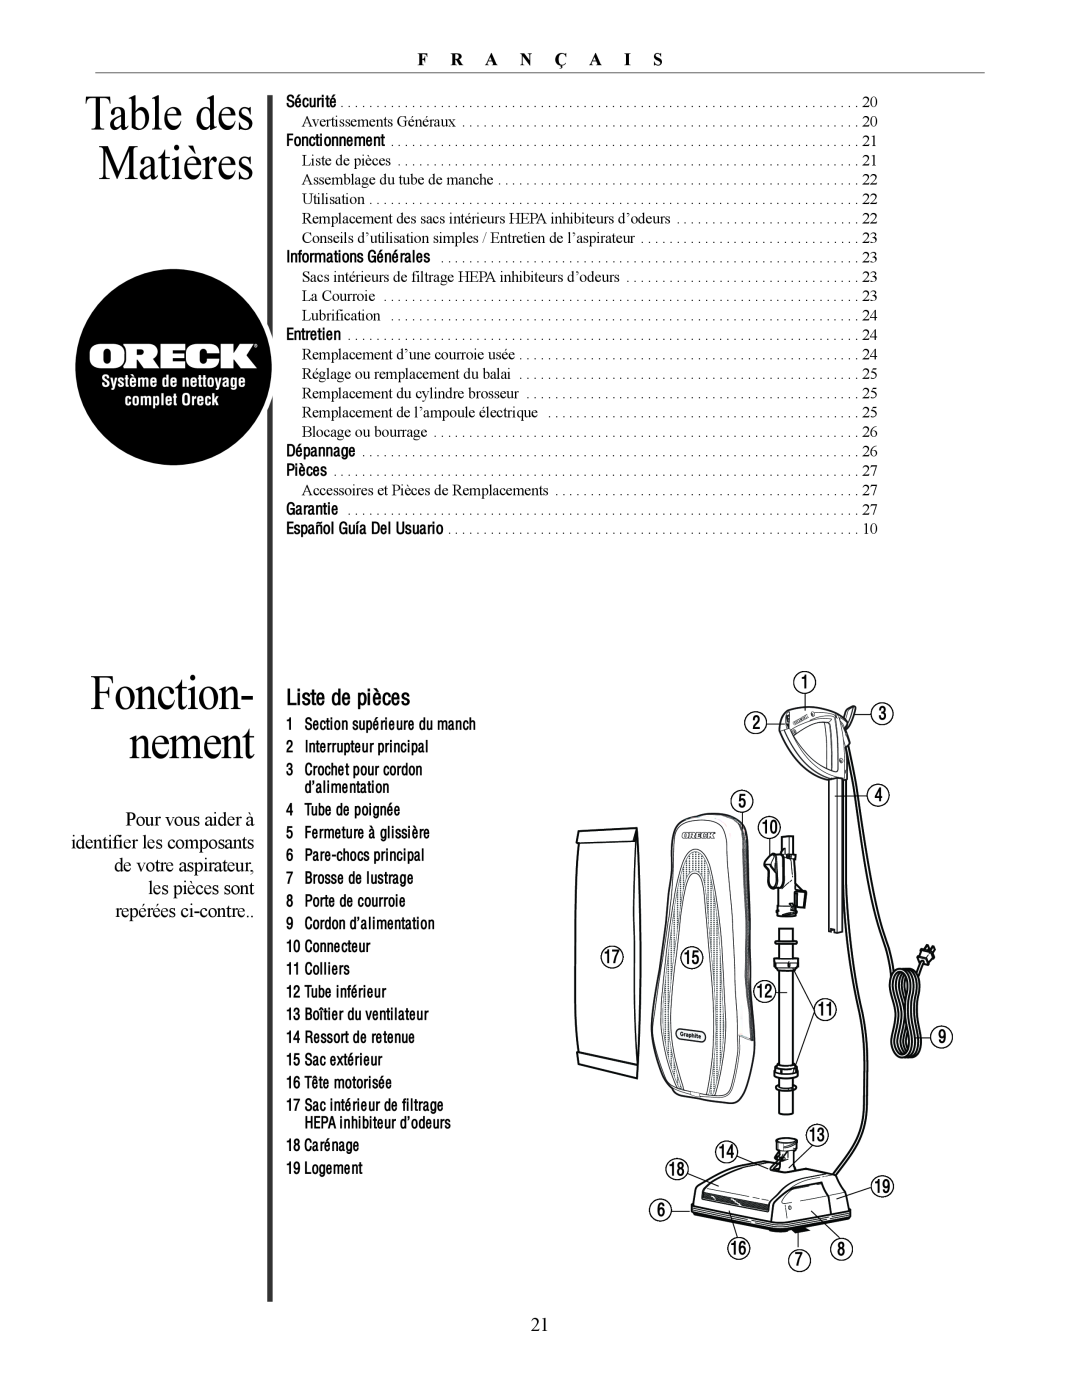 Oreck U4300 manual Table des Matières, Fonction- nement, F R A N Ç A I S 